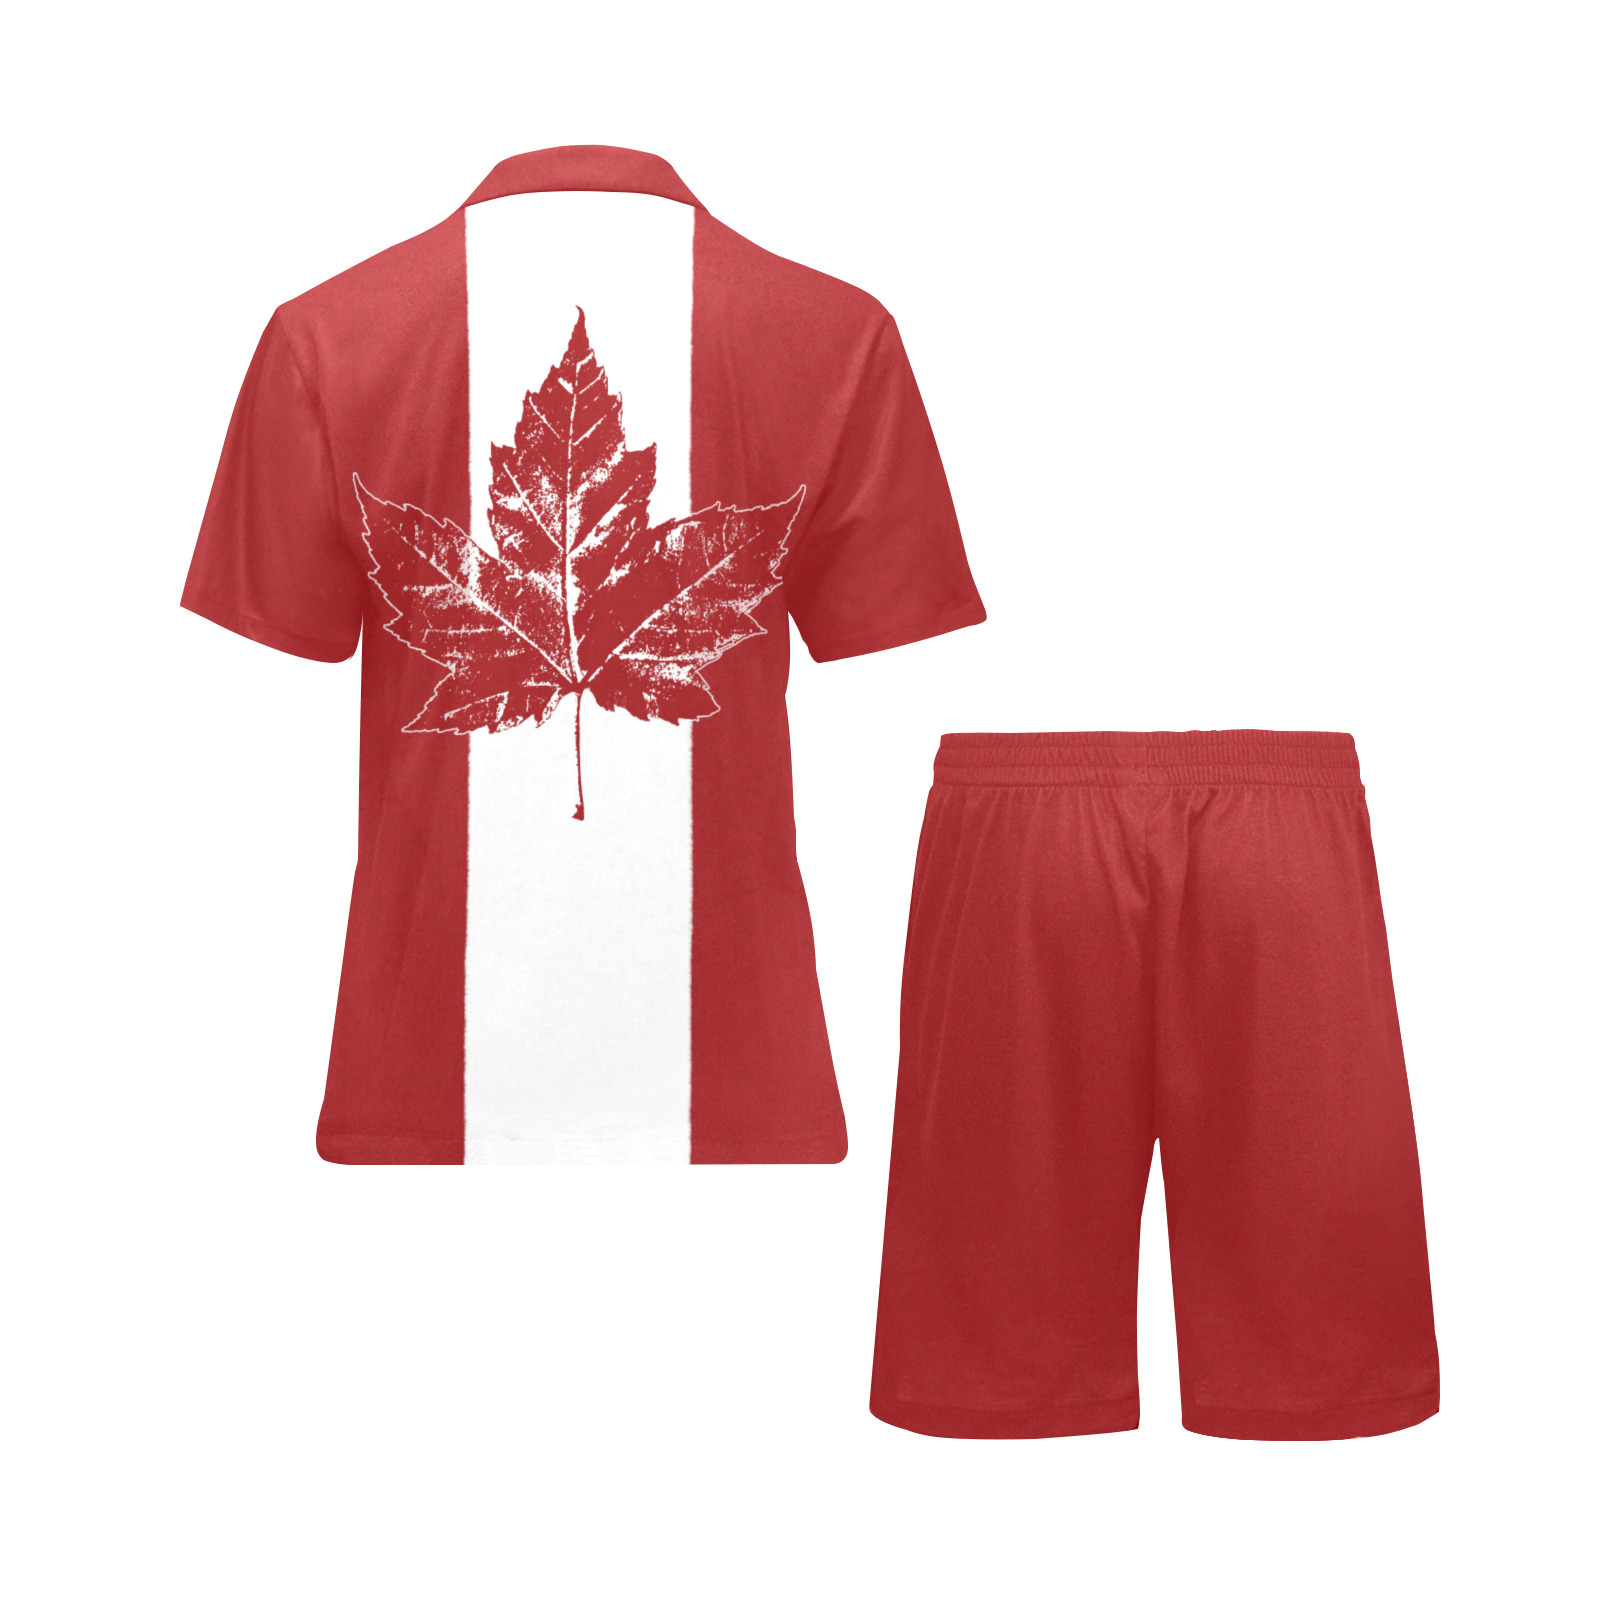 Cool Canada Pajama Set Men's V-Neck Short Pajama Set